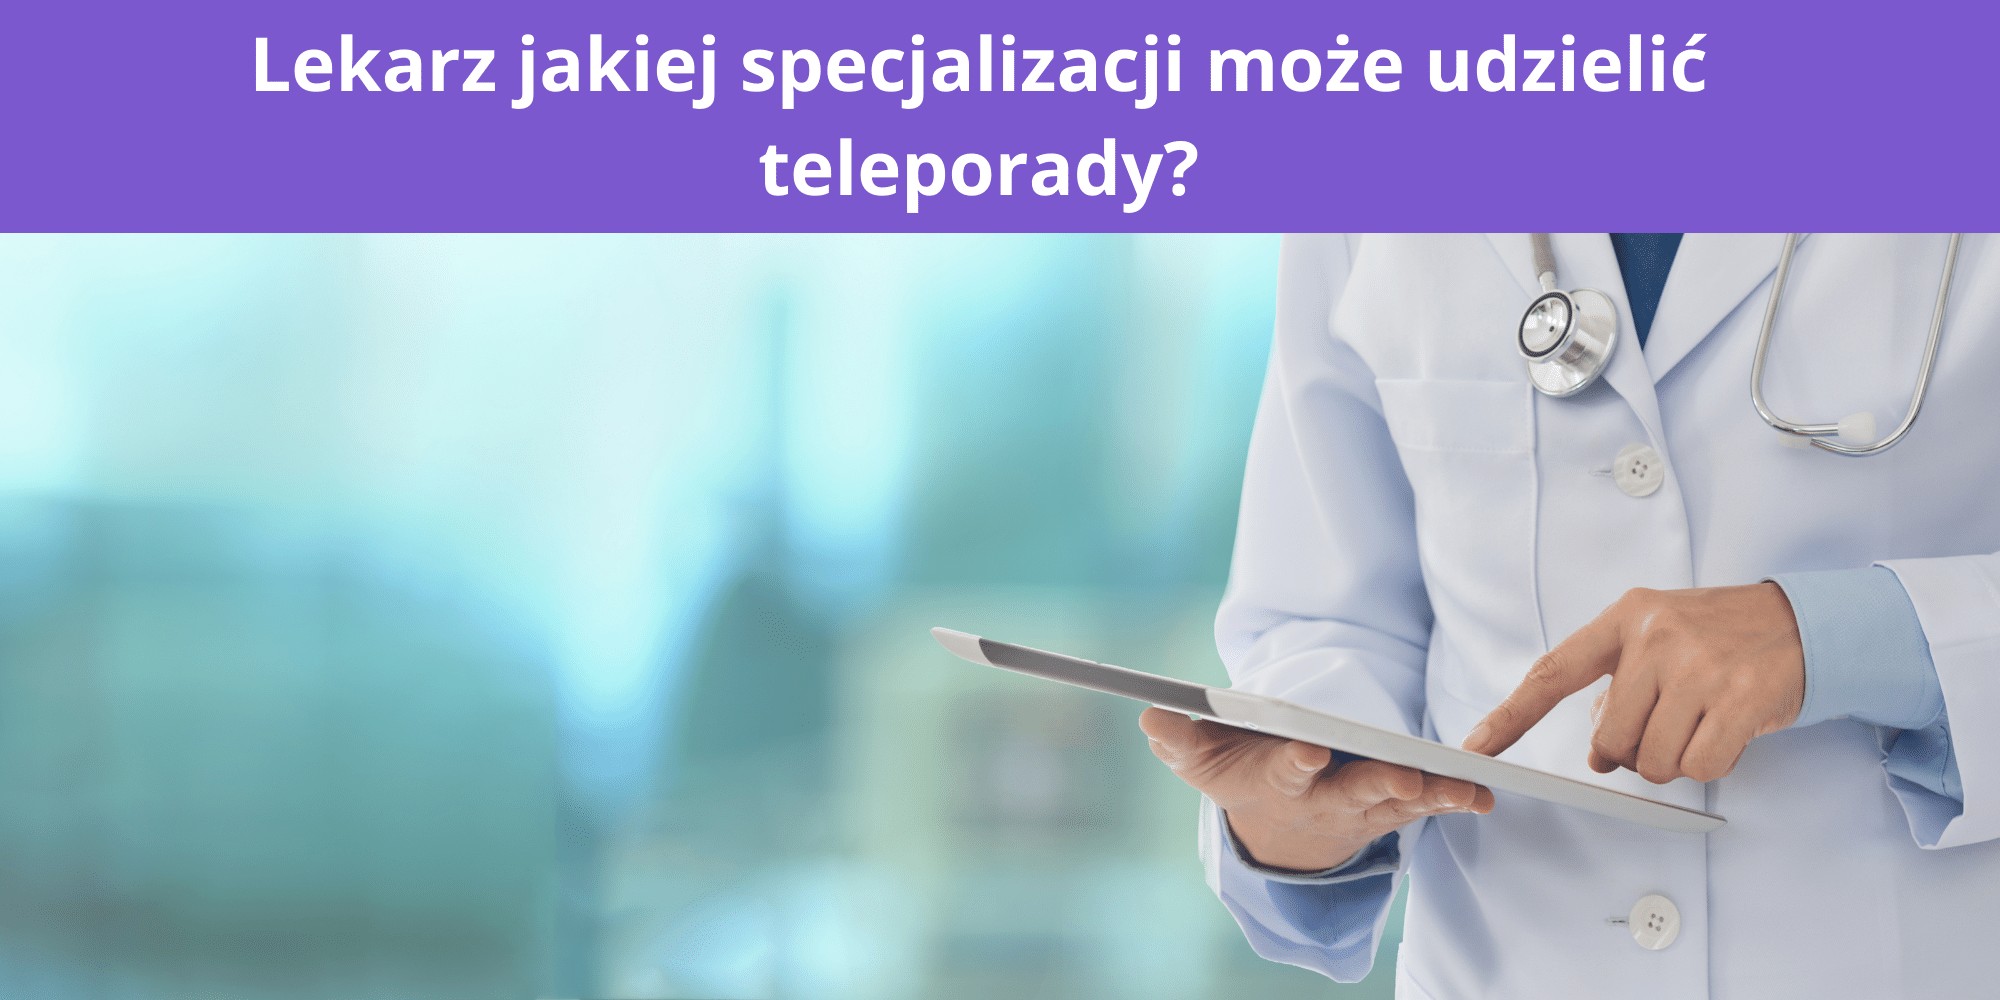 Lekarz jakiej specjalizacji może udzielić teleporady?